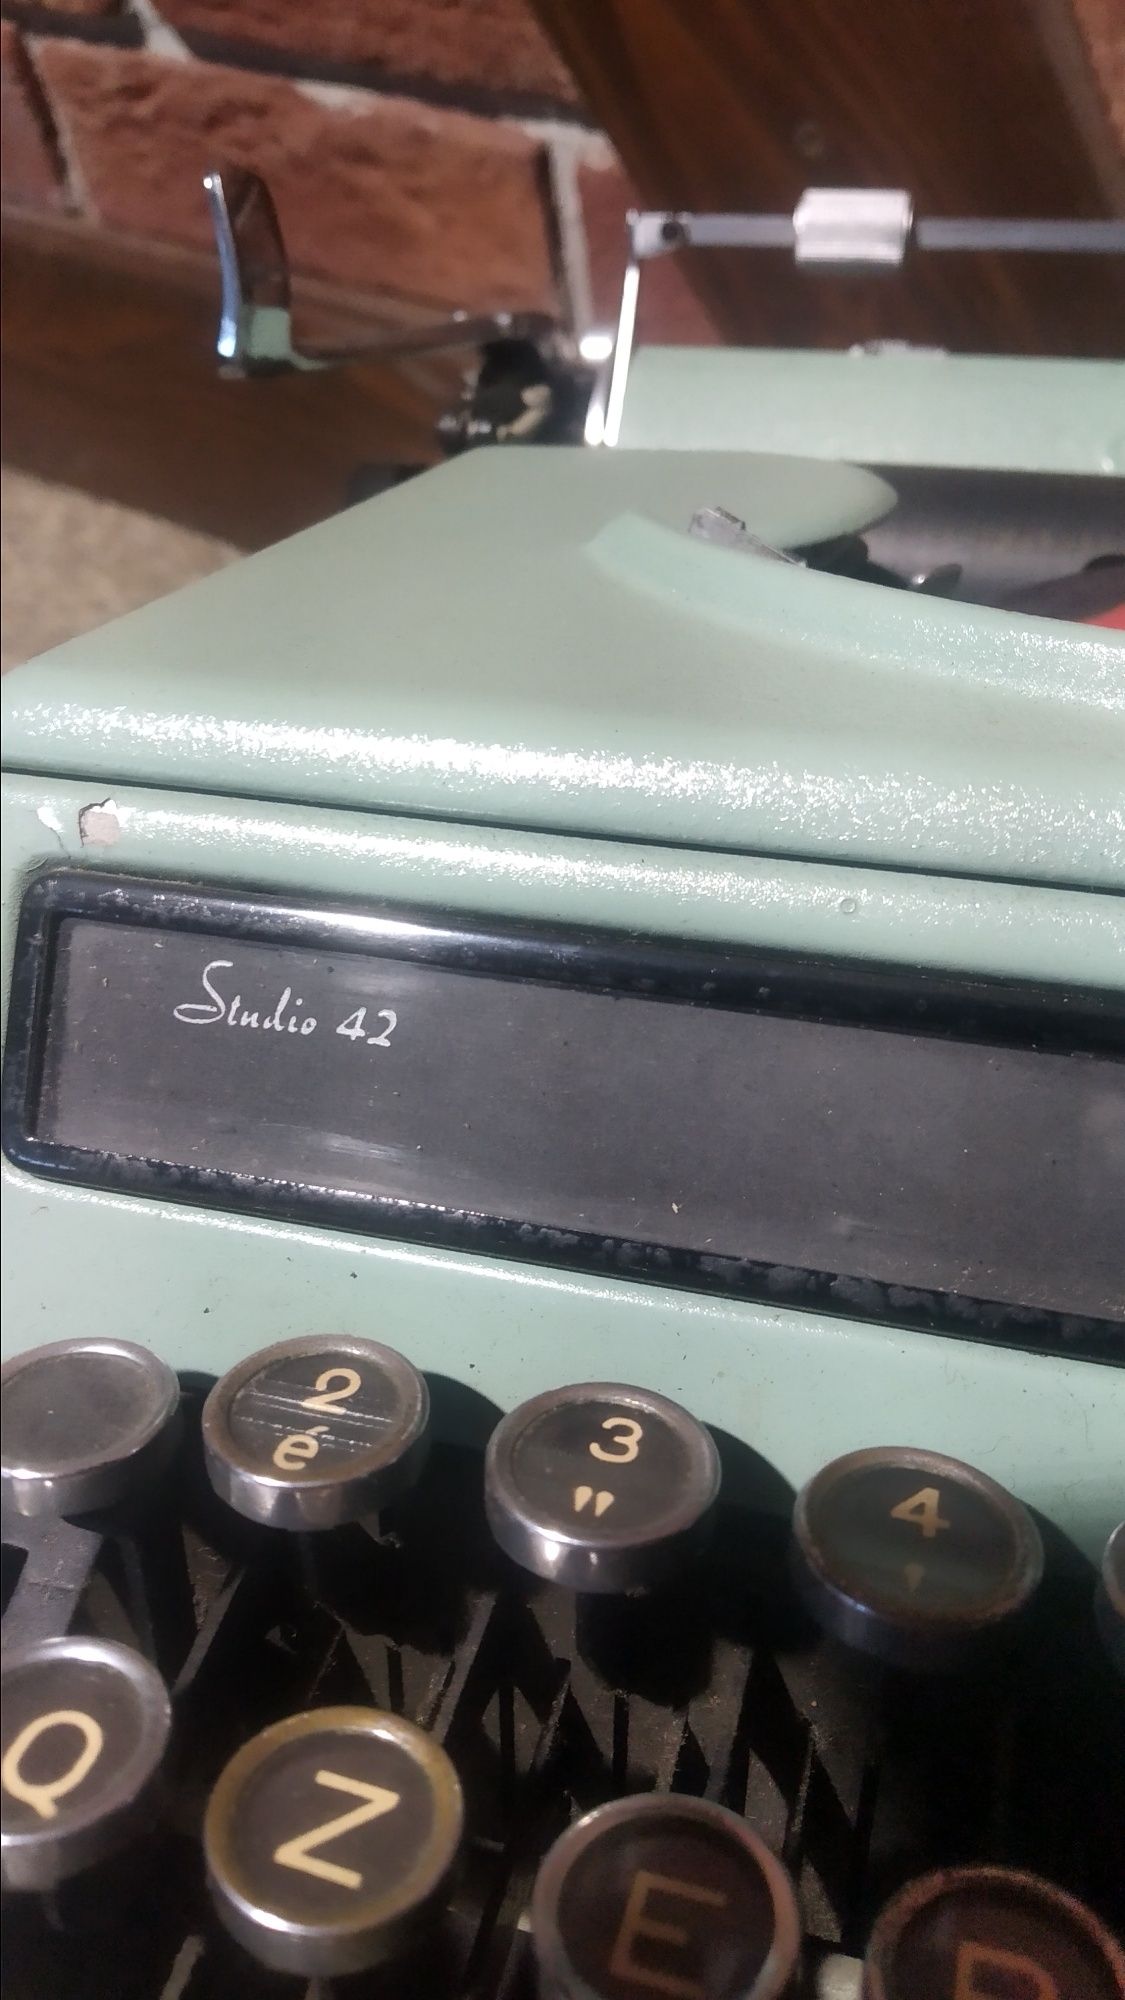 Maszyna do pisania olivetti